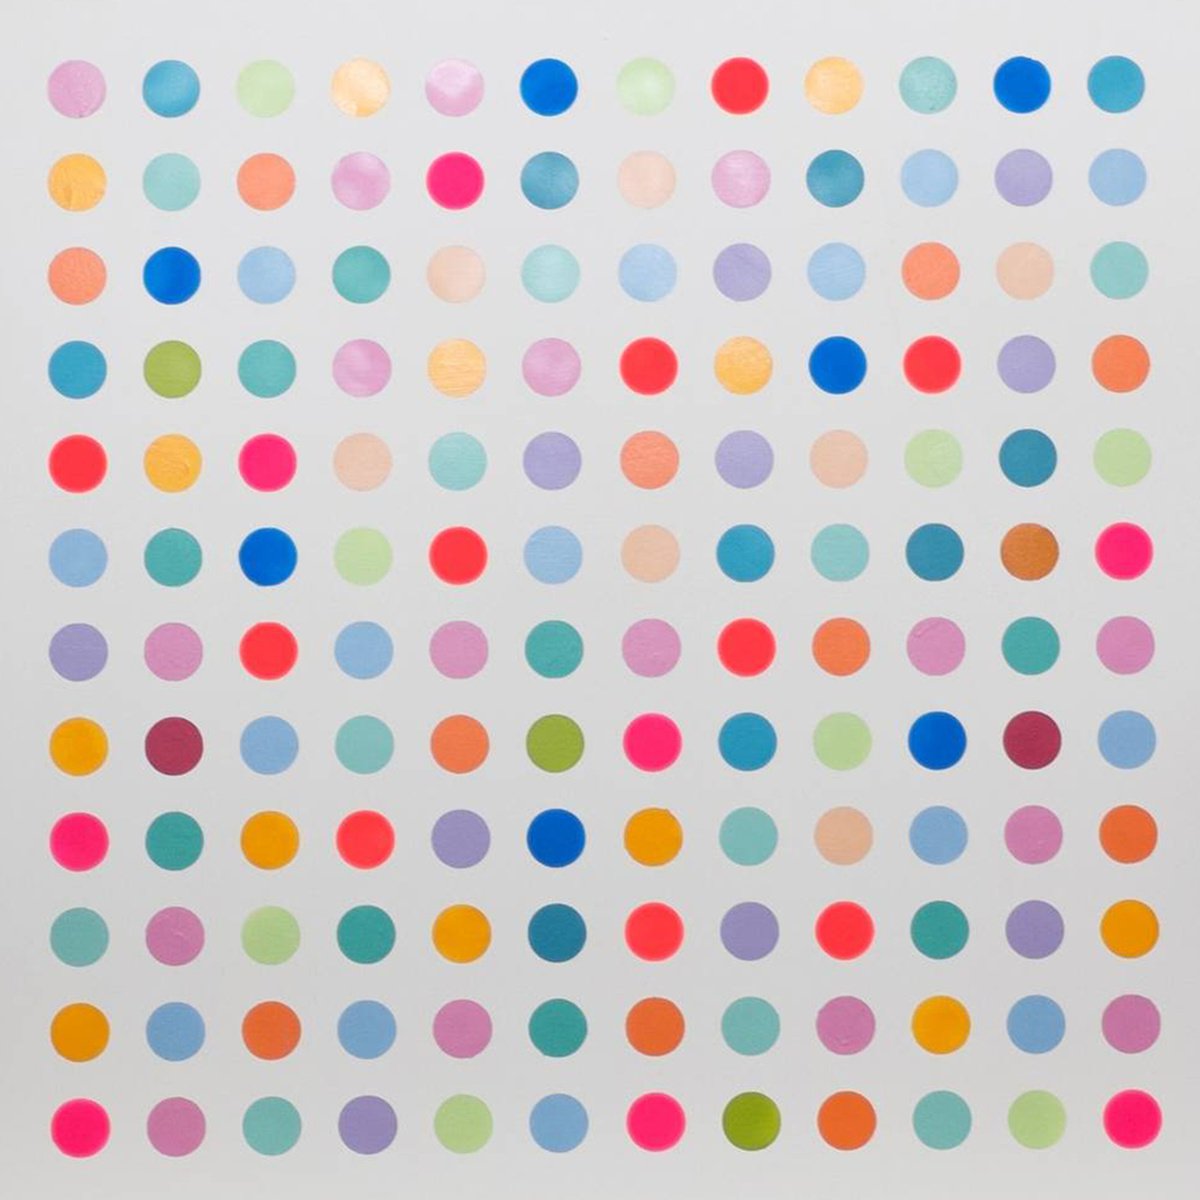 Dots IX Painting by Dane Shue by Dane Shue